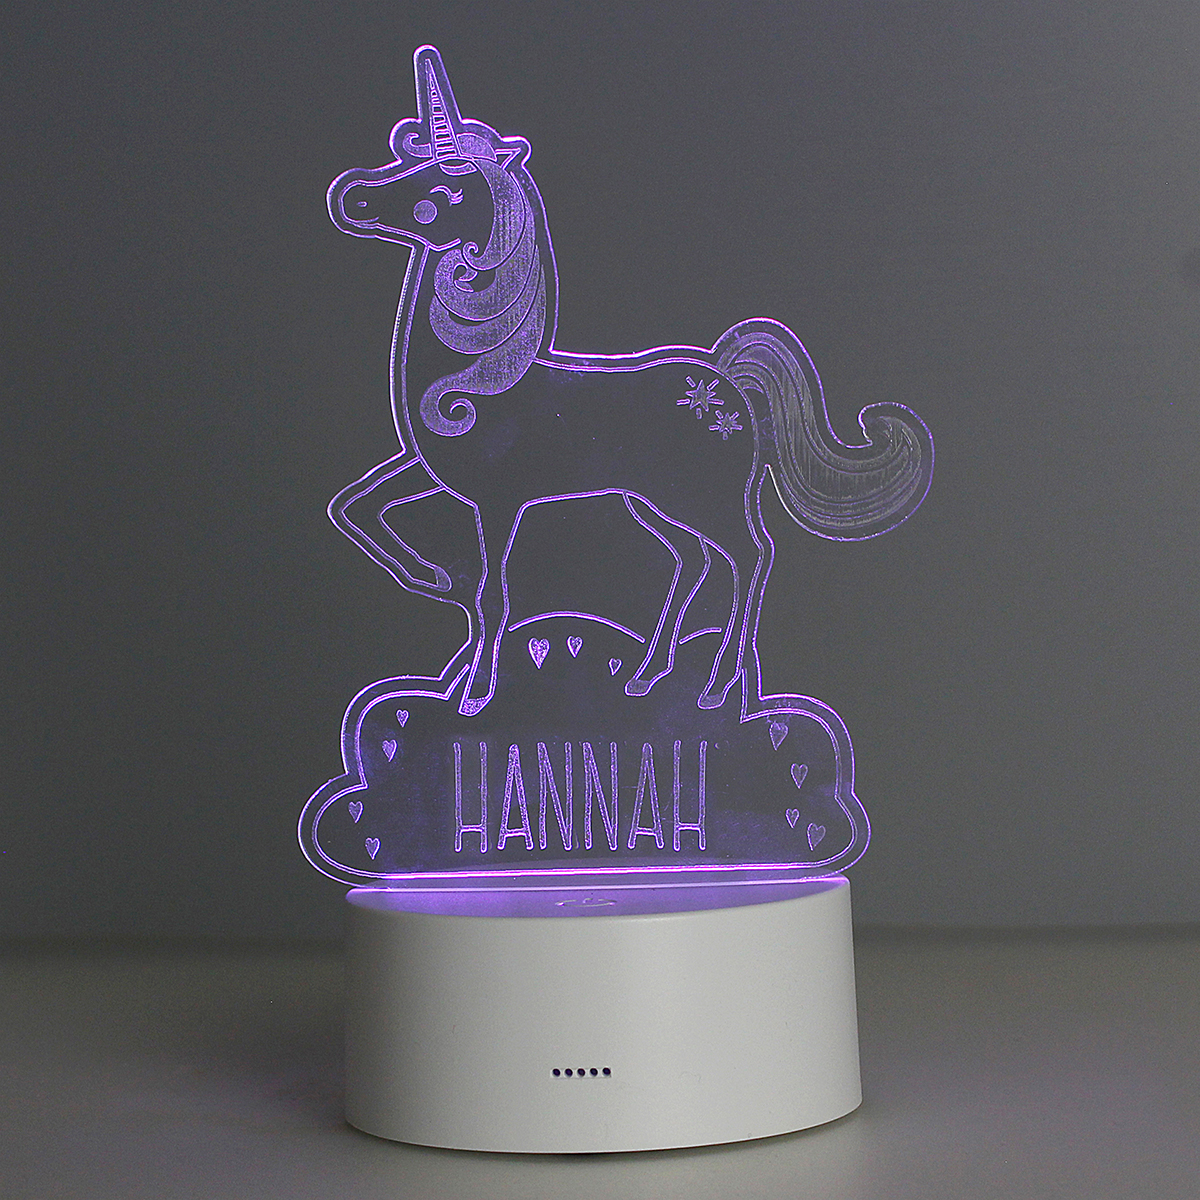 Personalised LED Colour Changing Night Light - Unicorn